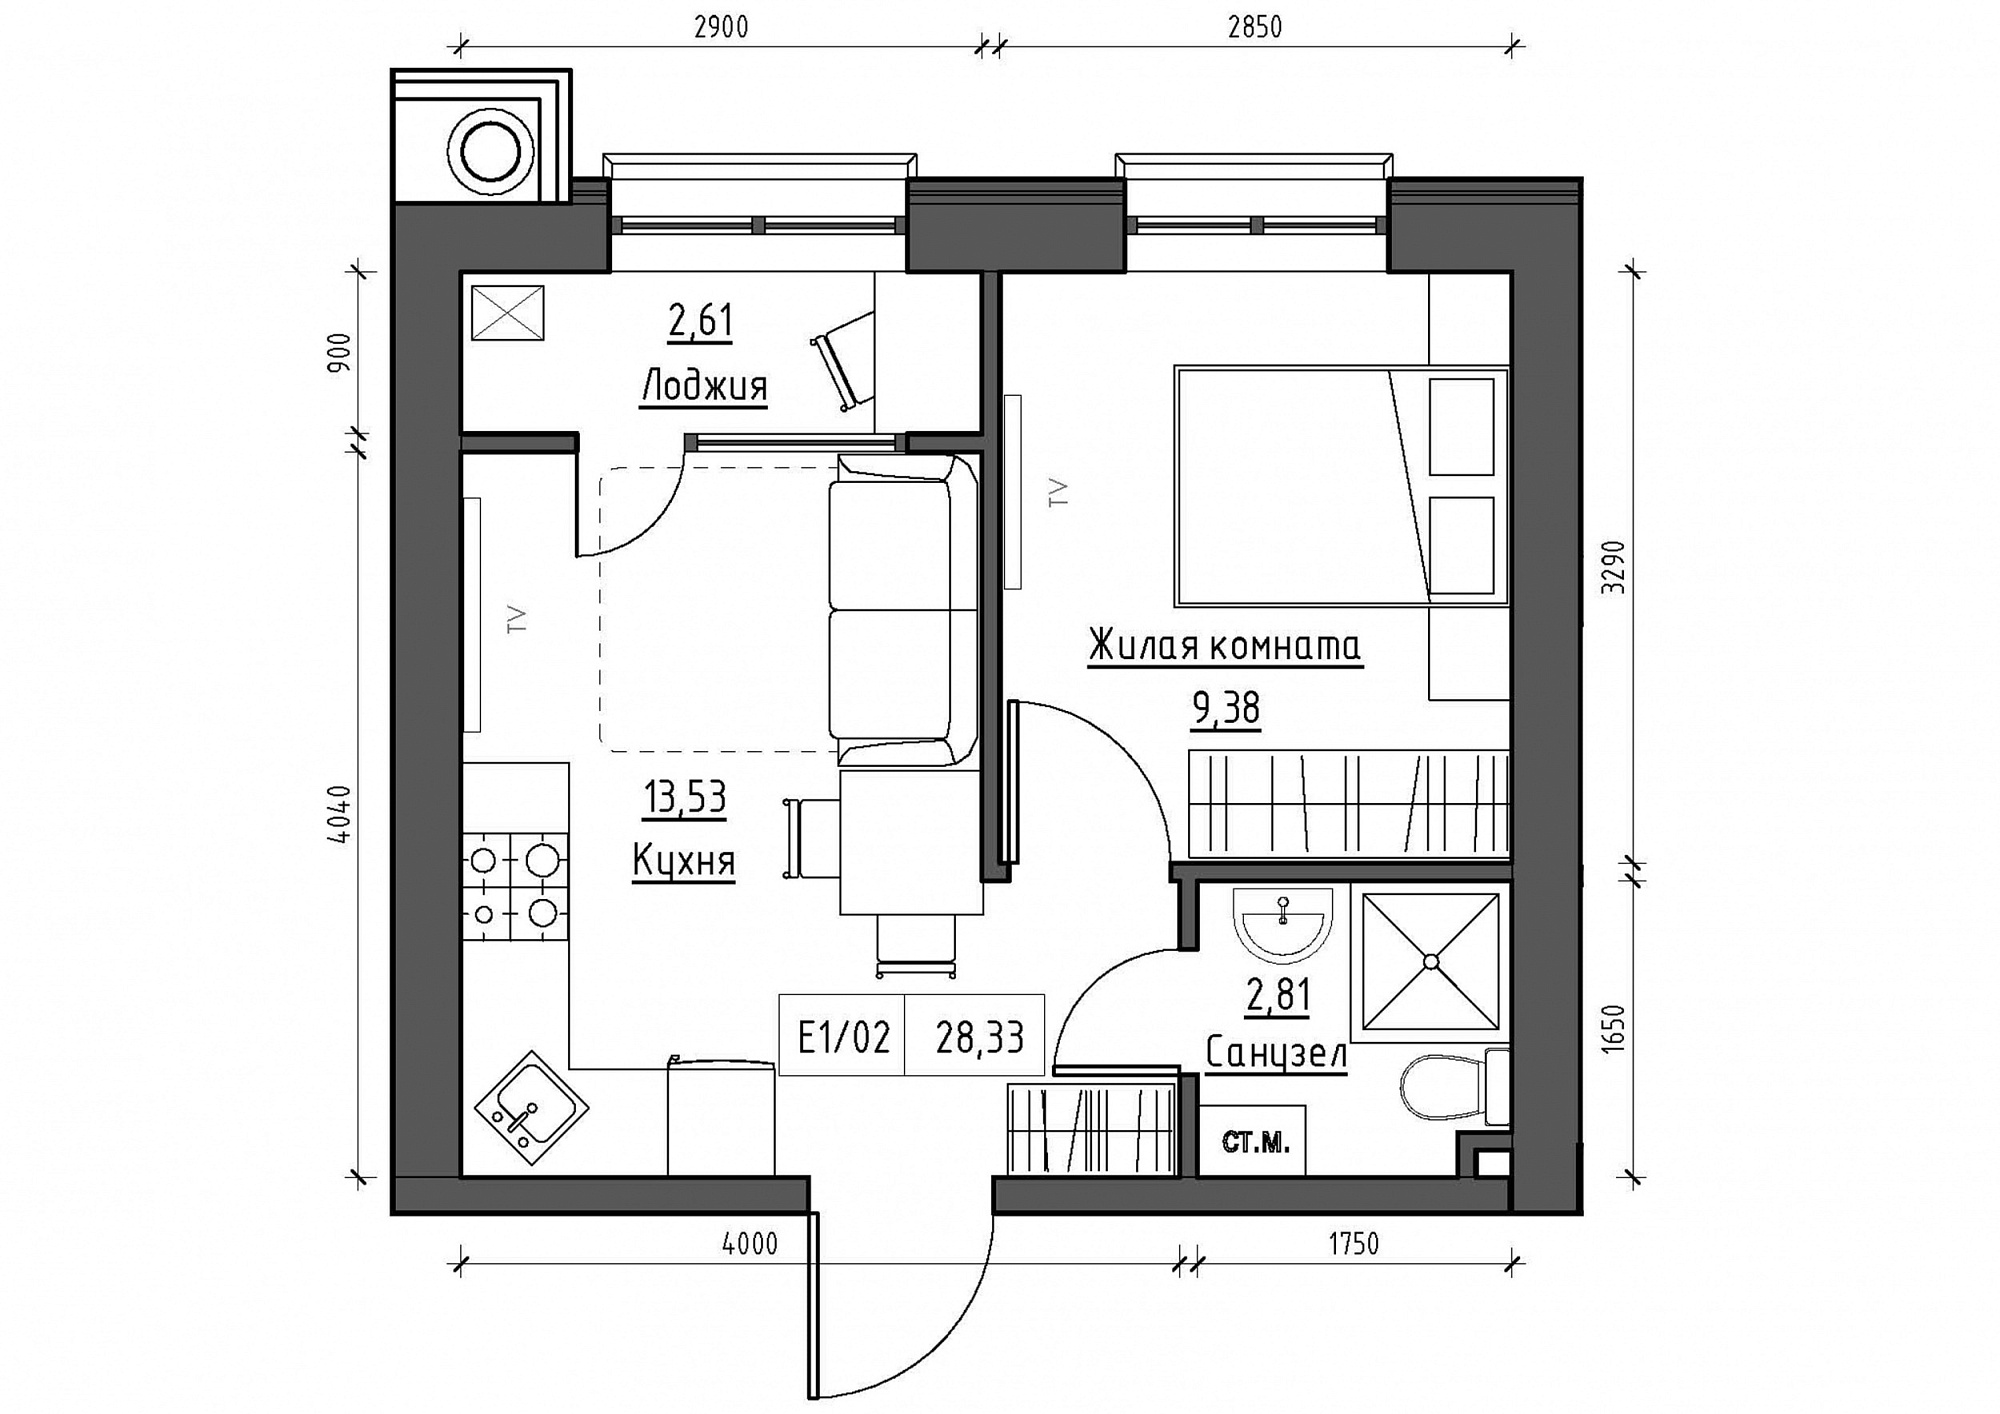 Планування 1-к квартира площею 28.33м2, KS-011-02/0015.